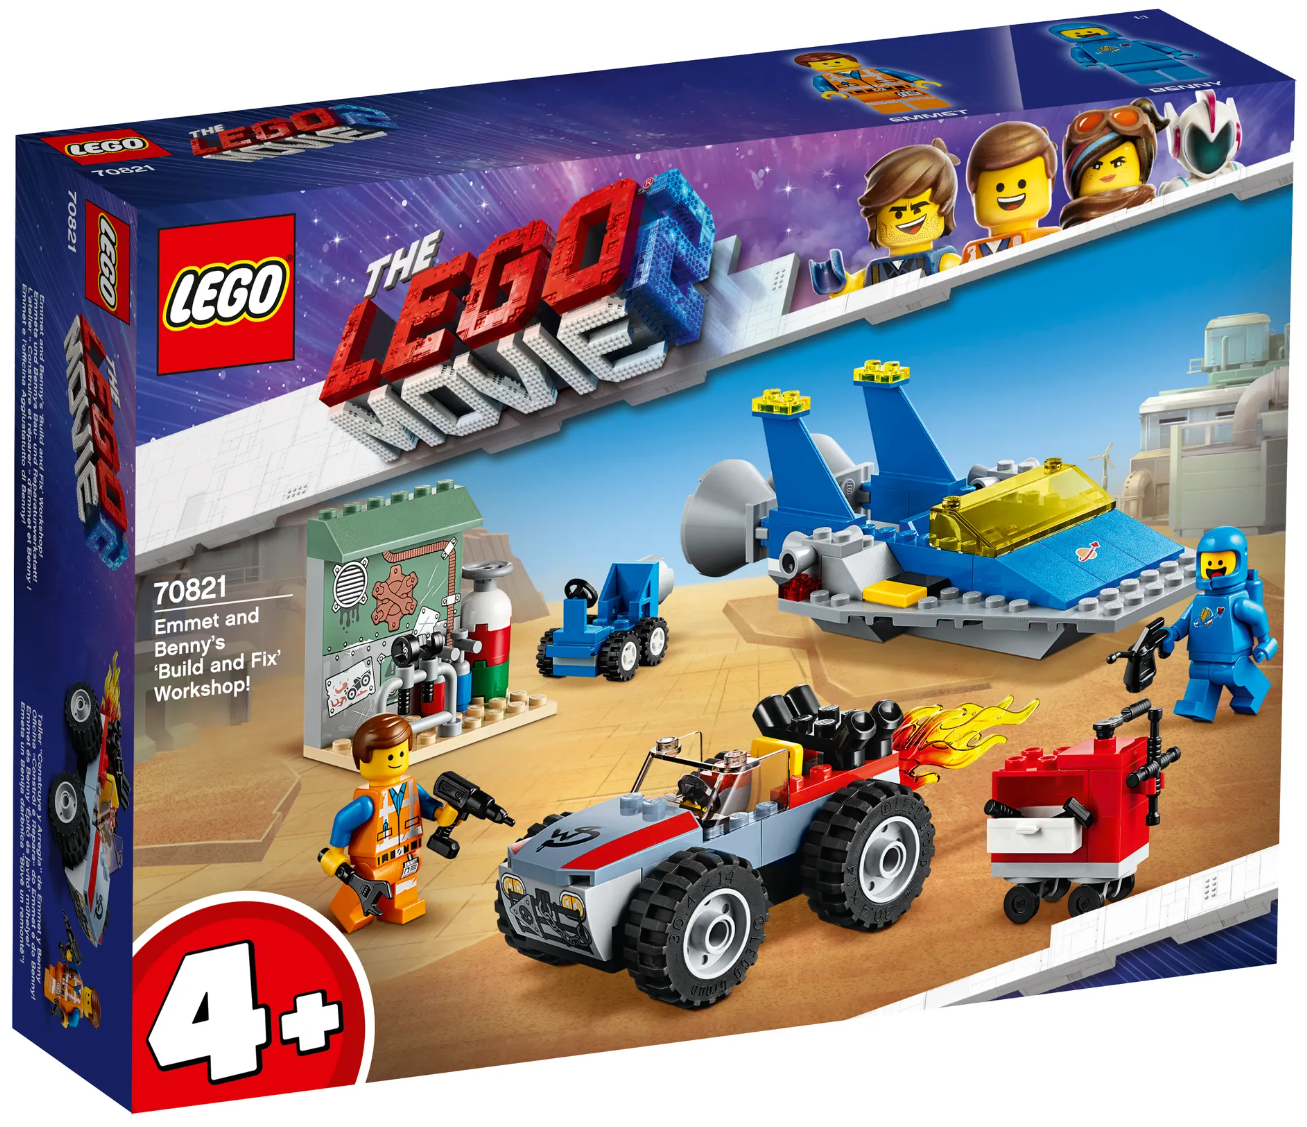 Immagine relativa a Lego 70821 Emmets und Bennys BAU - Space